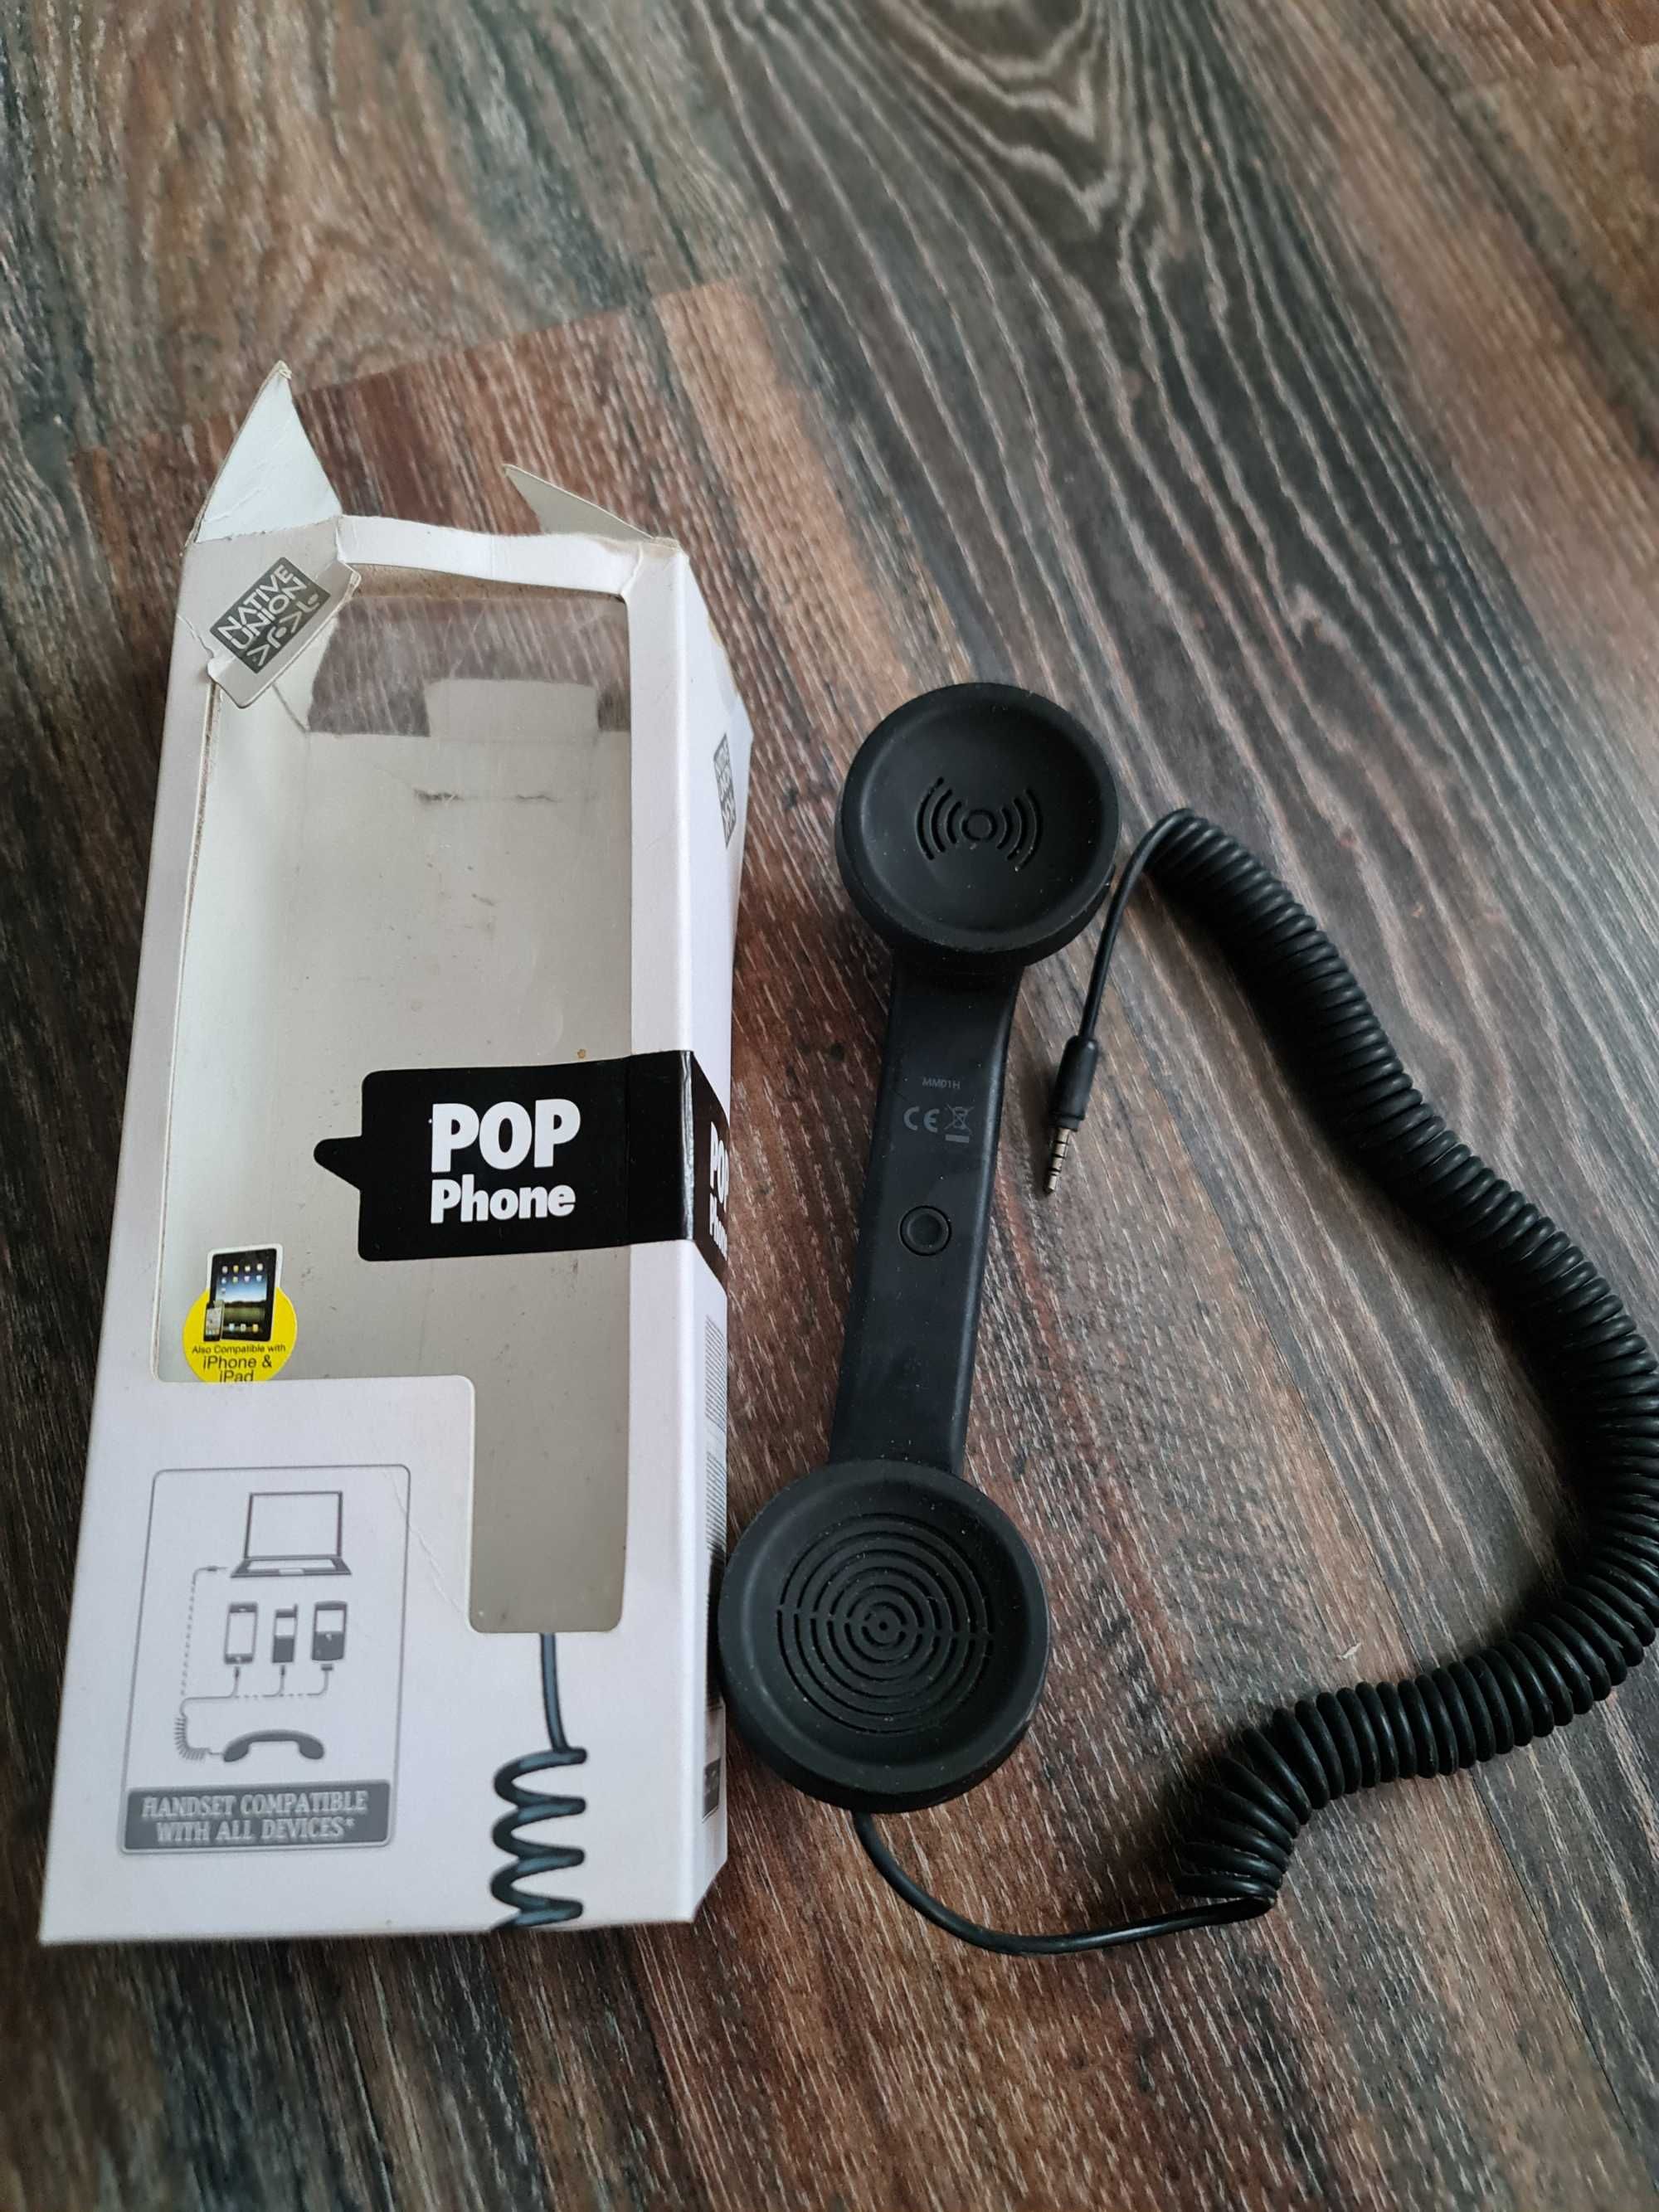 Pop phone the retro handset